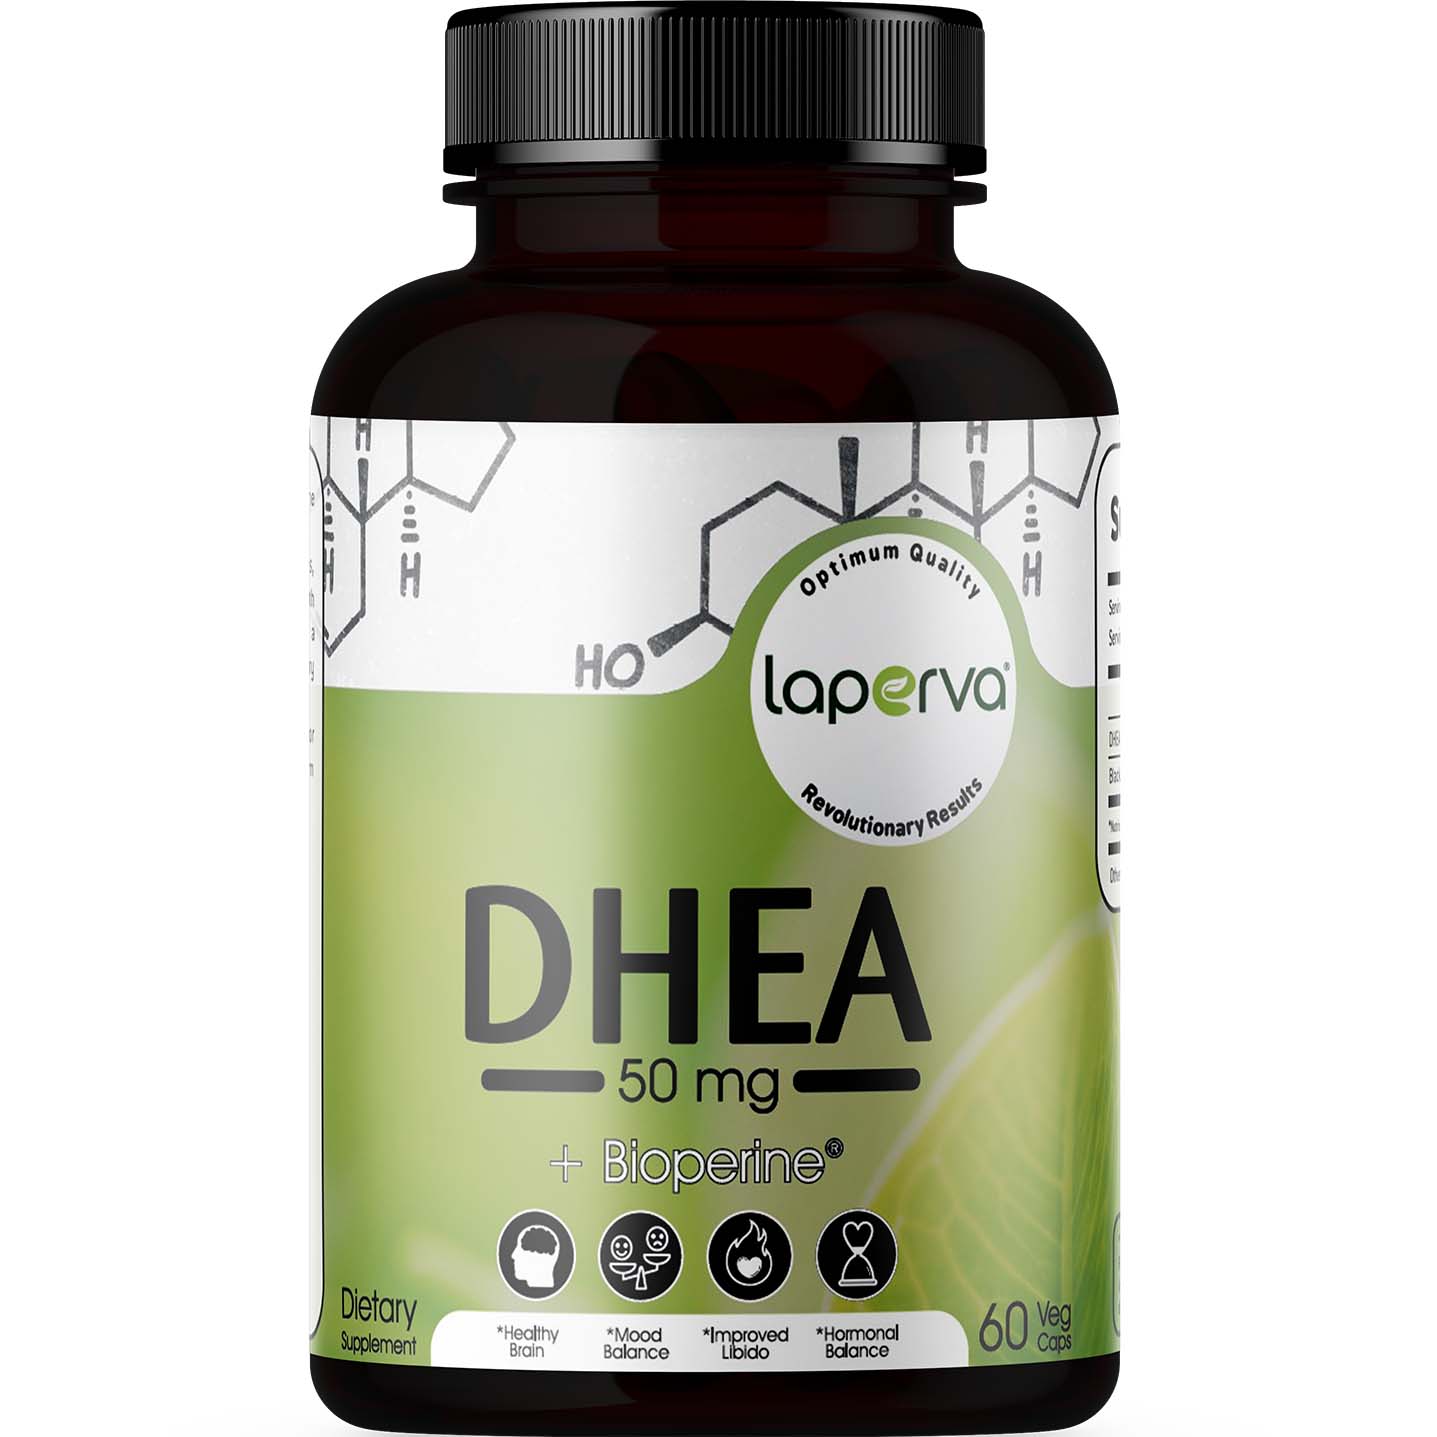 Laperva DHEA Plus Bioperine 60 Veggie Capsules 50 mg